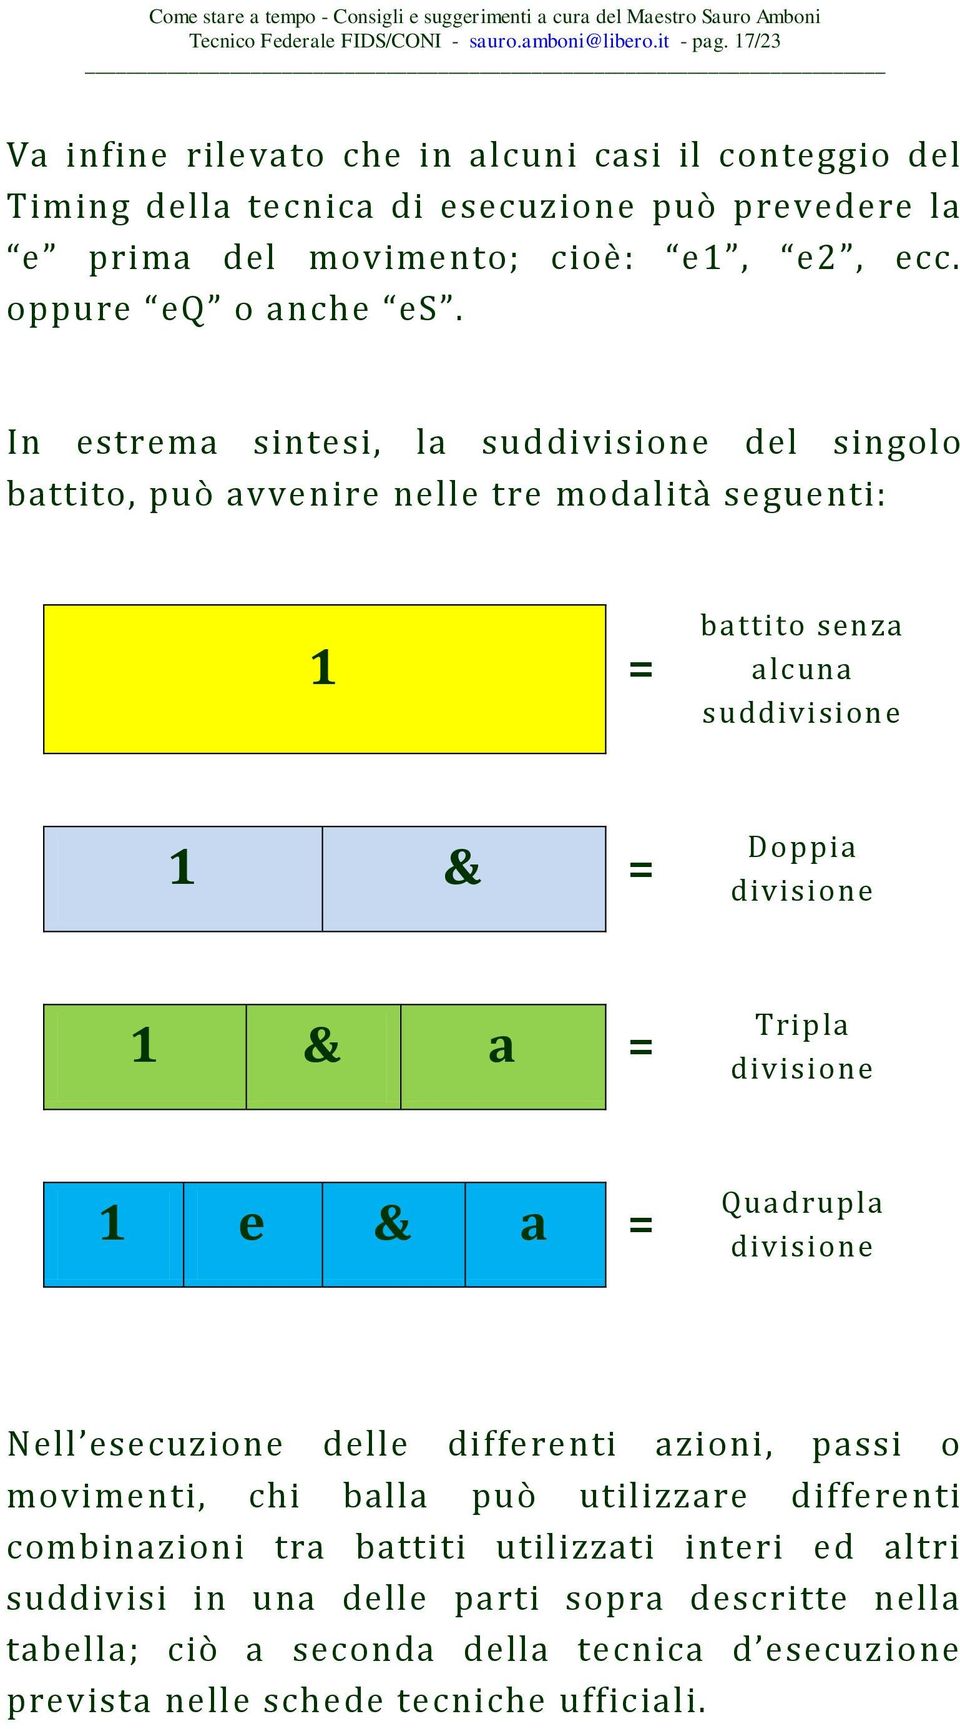 In estrema sintesi, la suddivisione del singolo battito, può avvenire nelle tre modalità seguenti: 1 = battito senza alcuna suddivisione 1 & = Doppia divisione 1 & a = Tripla divisione